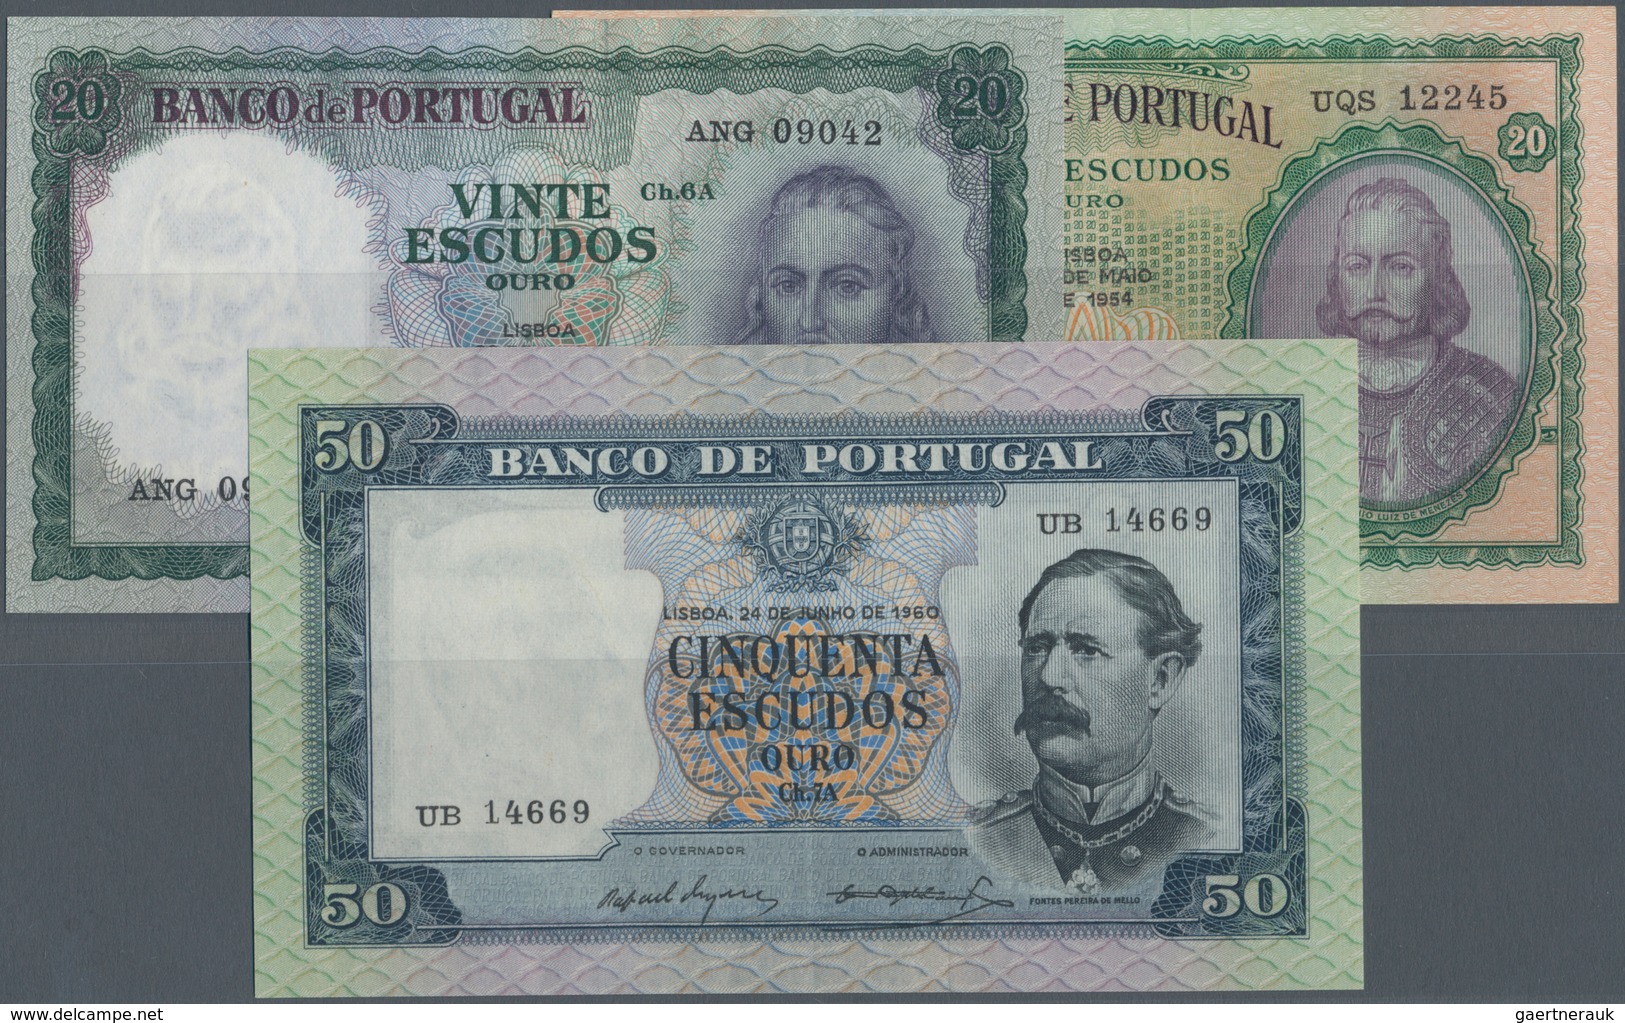 Portugal: Set Of 3 Notes Containing 20 Escudos 1954 P. 153 (VF To XF), 20 Escudos 1960 P. 163 (press - Portugal